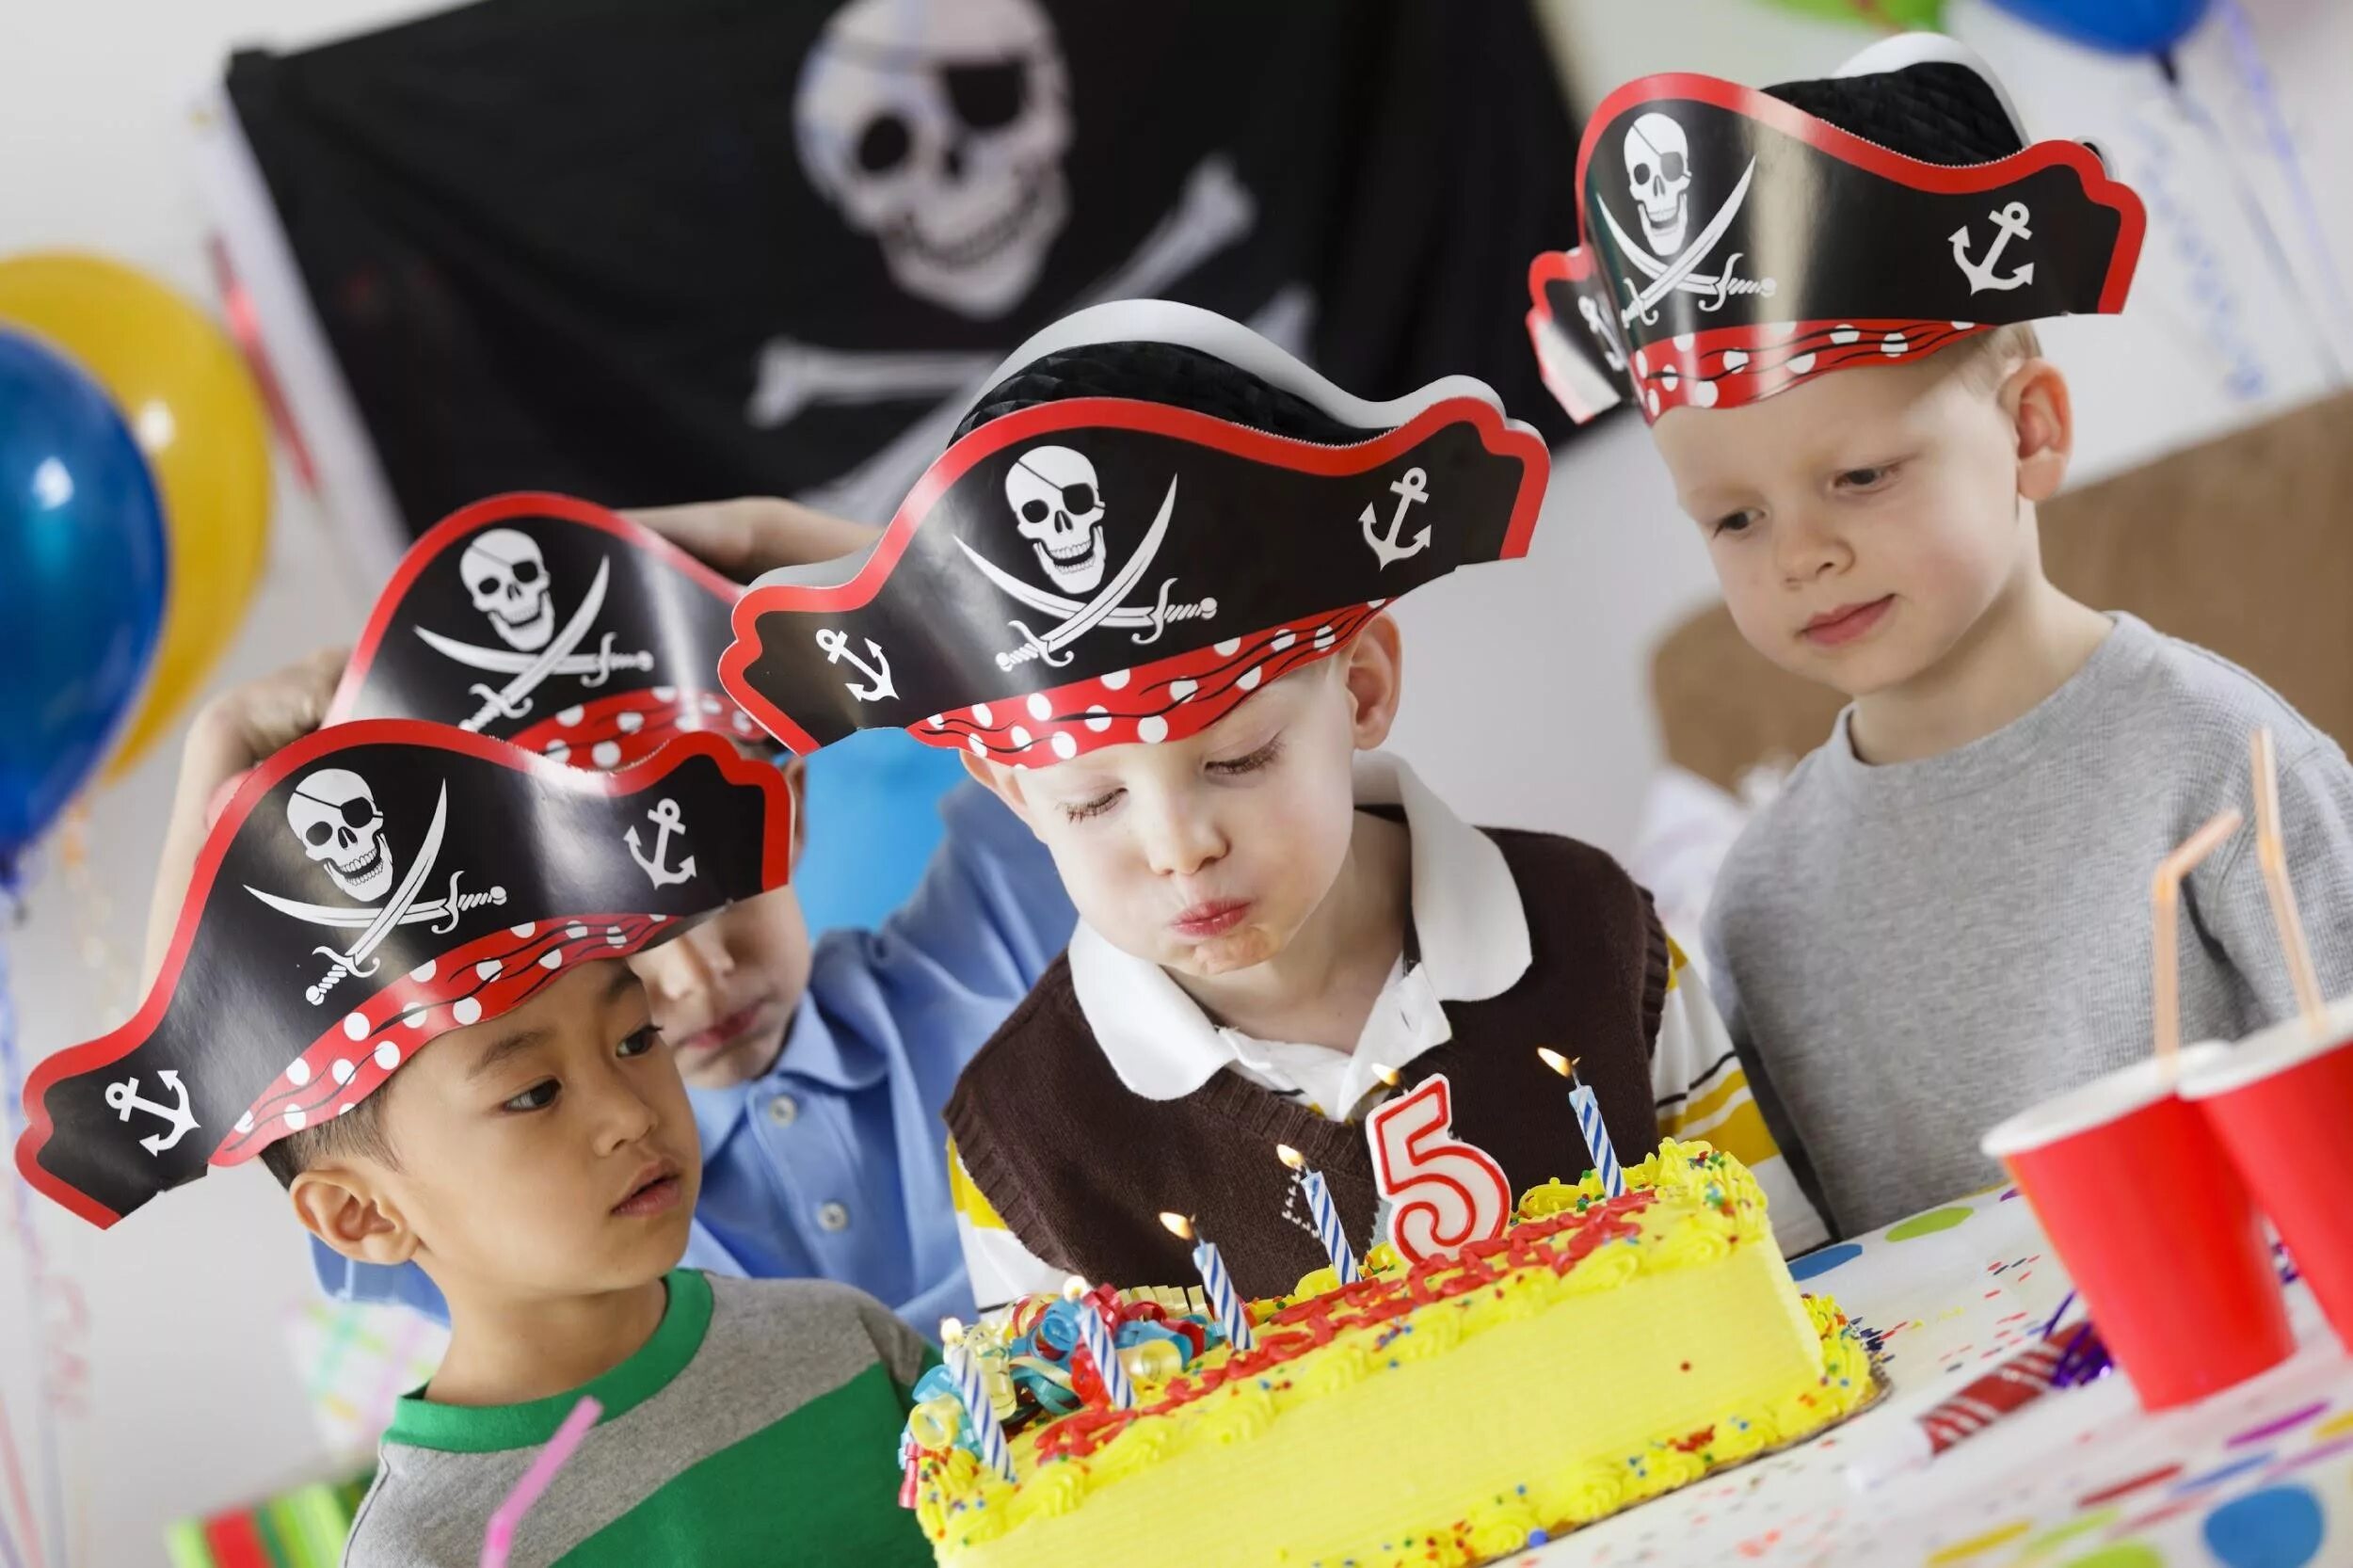 Пиратская вечеринка. Вечеринка в пиратском стиле для детей. День рождения в стиле пиратской вечеринки. Детский день рождения в пиратском стиле. Сценарий детского праздника для детей